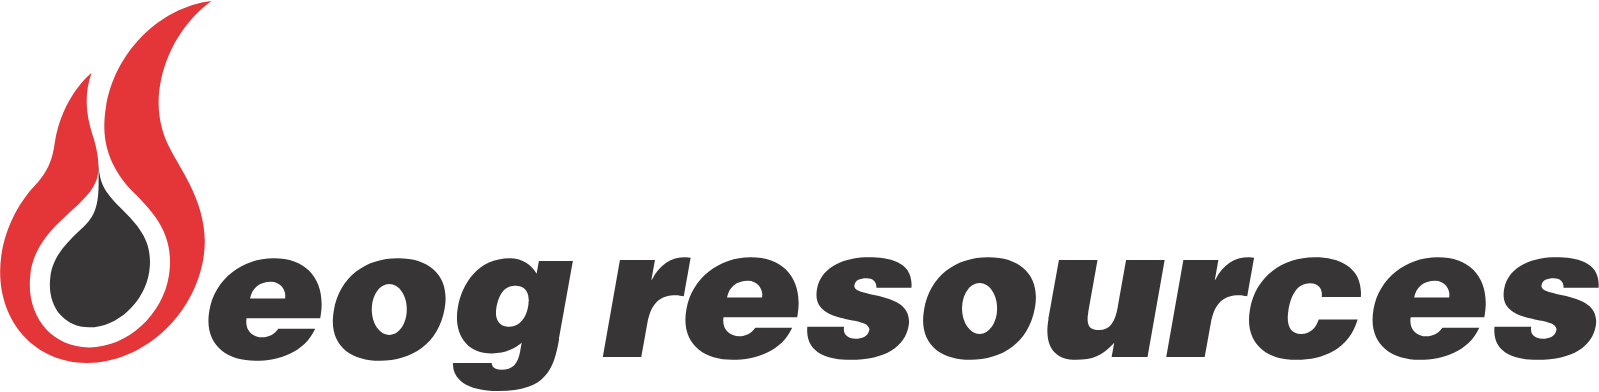 EOG Resources logo large (transparent PNG)